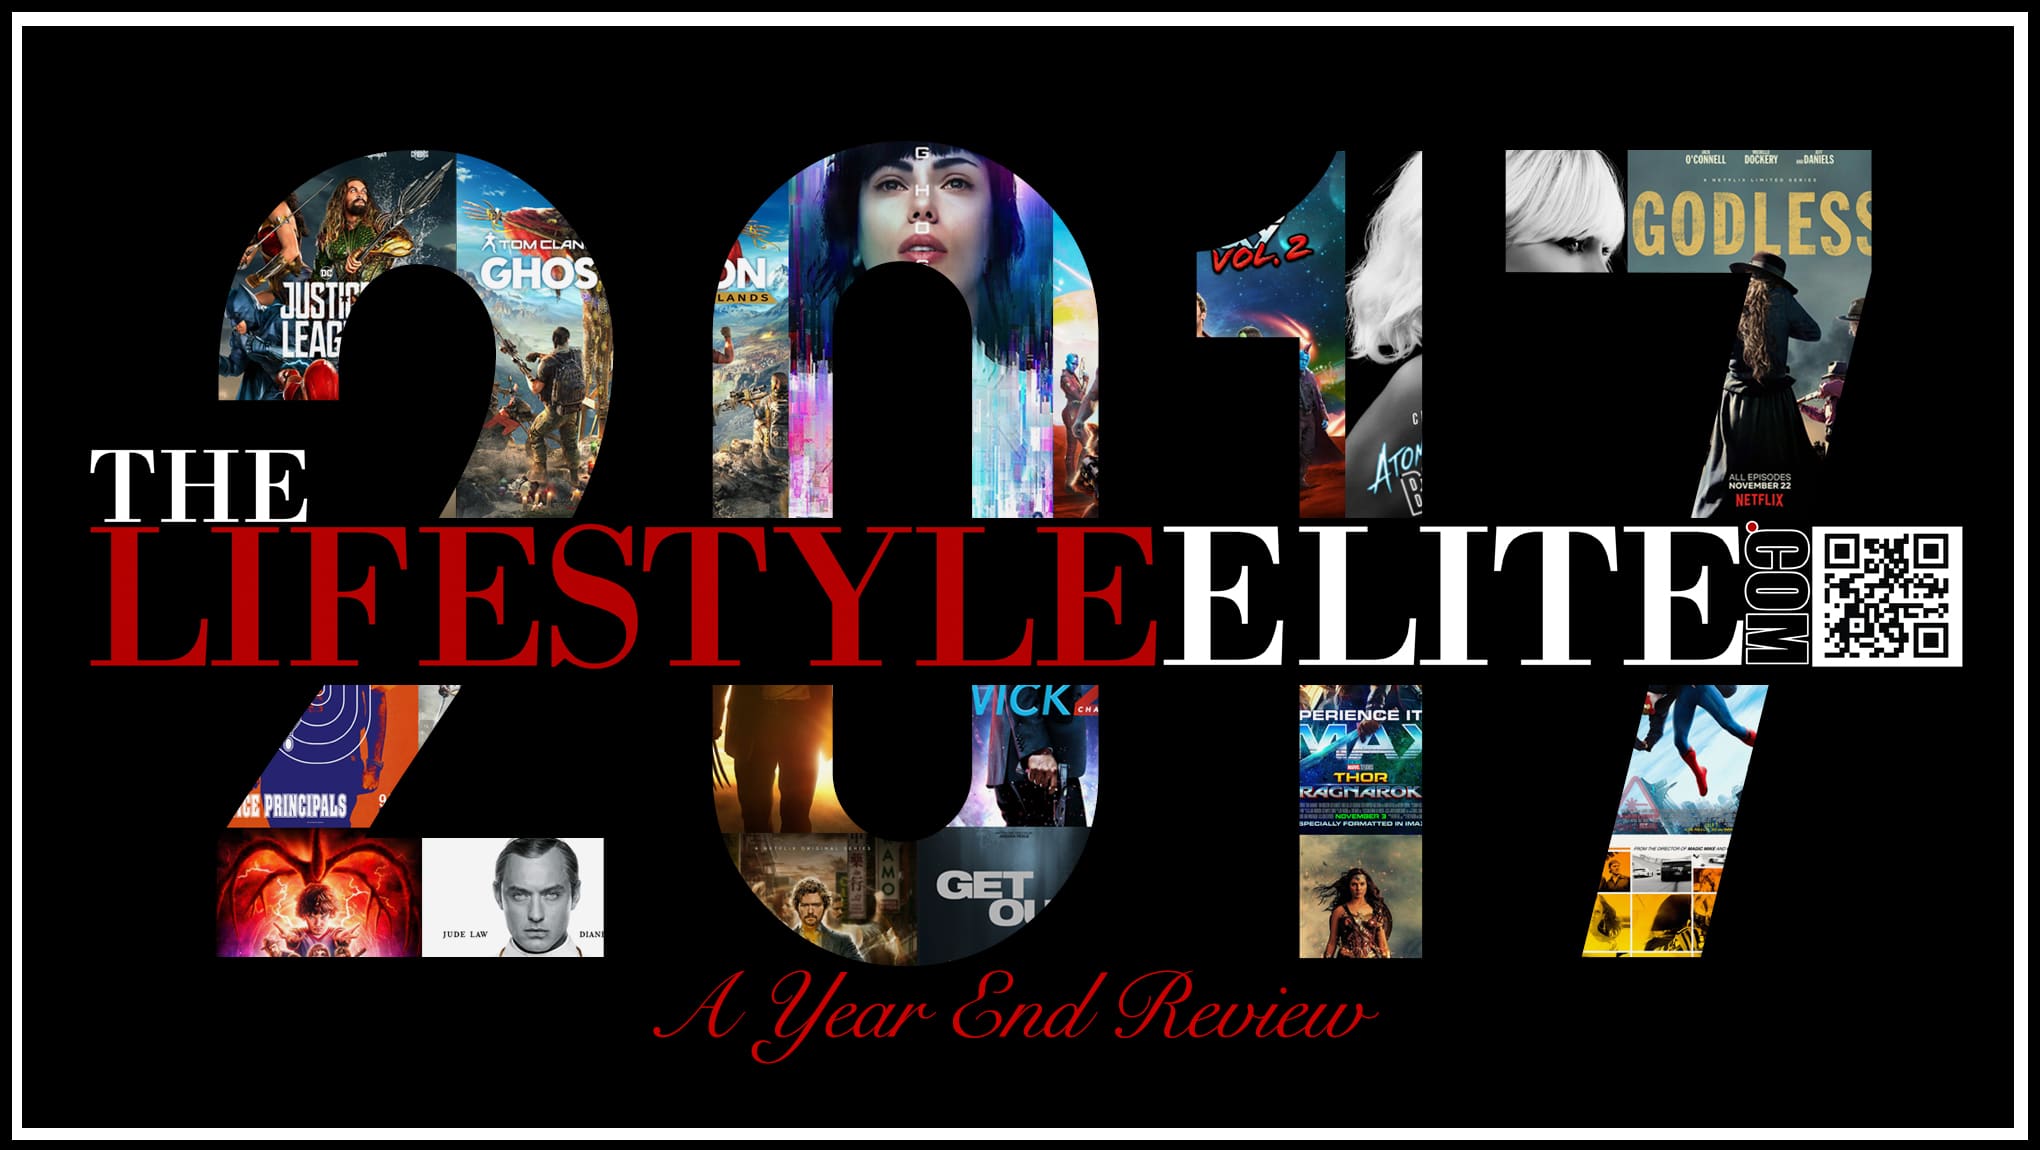 2017,new year 2018,cheyan antwaune gray, cheyan gray, antwaune gray, thelifestyleelite,elite lifestyle, thelifestyleelitedotcom, thelifestyleelite.com,tlselite.com,TheLifeStyleElite.com,cheyan antwaune gray,fashion,models of thelifestyleelite.com, the life style elite,the lifestyle elite,elite lifestyle,lifestyleelite.com,cheyan gray,TLSElite,TLSElite.com,TLSEliteGaming,TLSElite Gaming